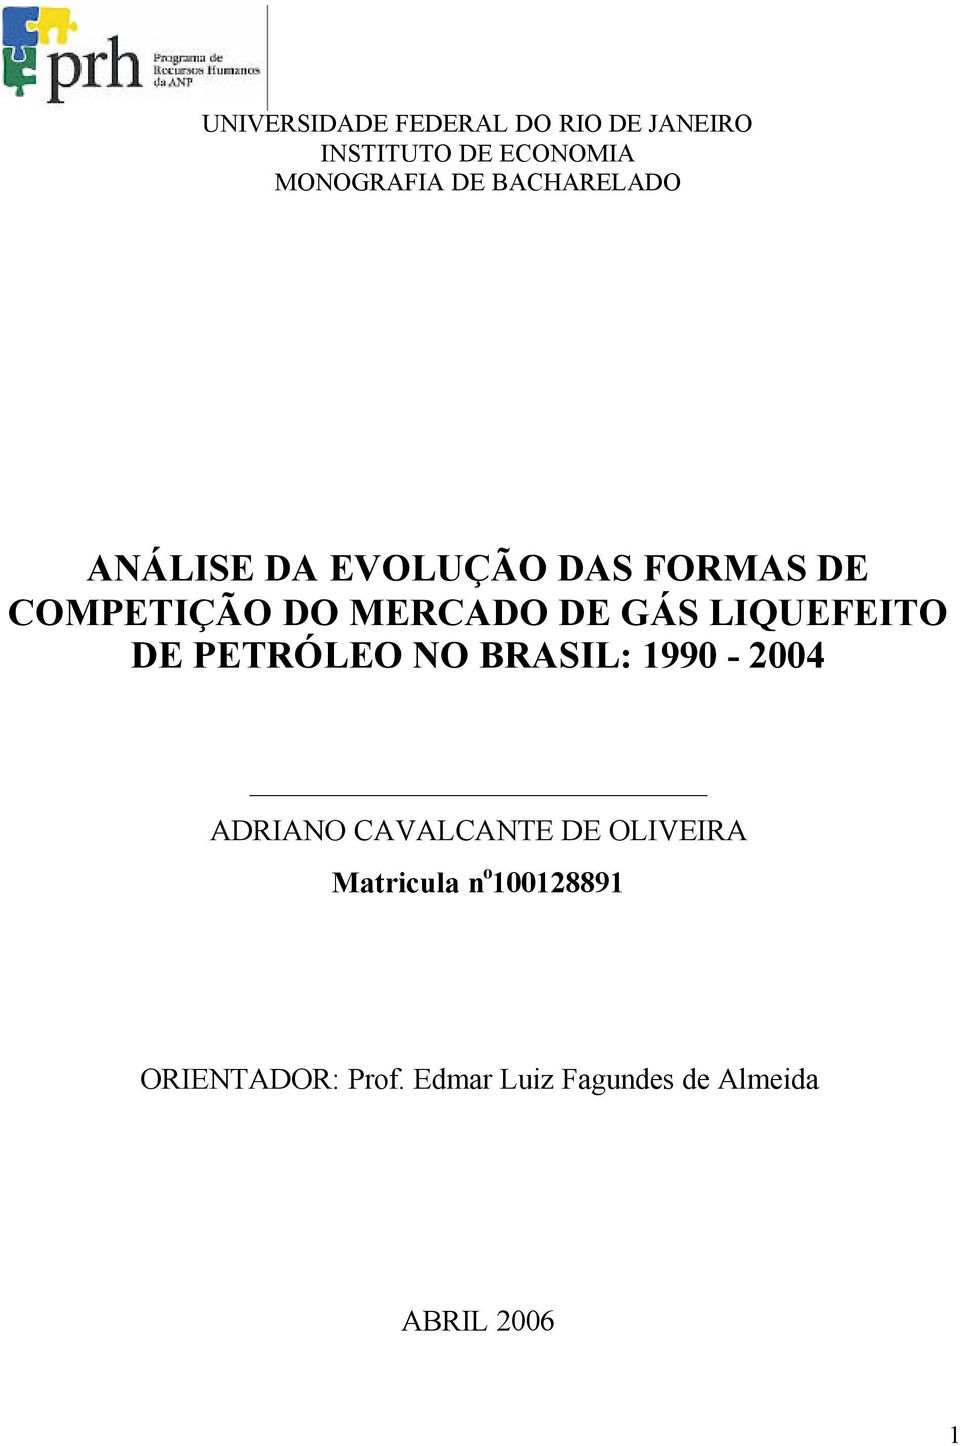 LIQUEFEITO DE PETRÓLEO NO BRASIL: 1990-2004 ADRIANO CAVALCANTE DE OLIVEIRA